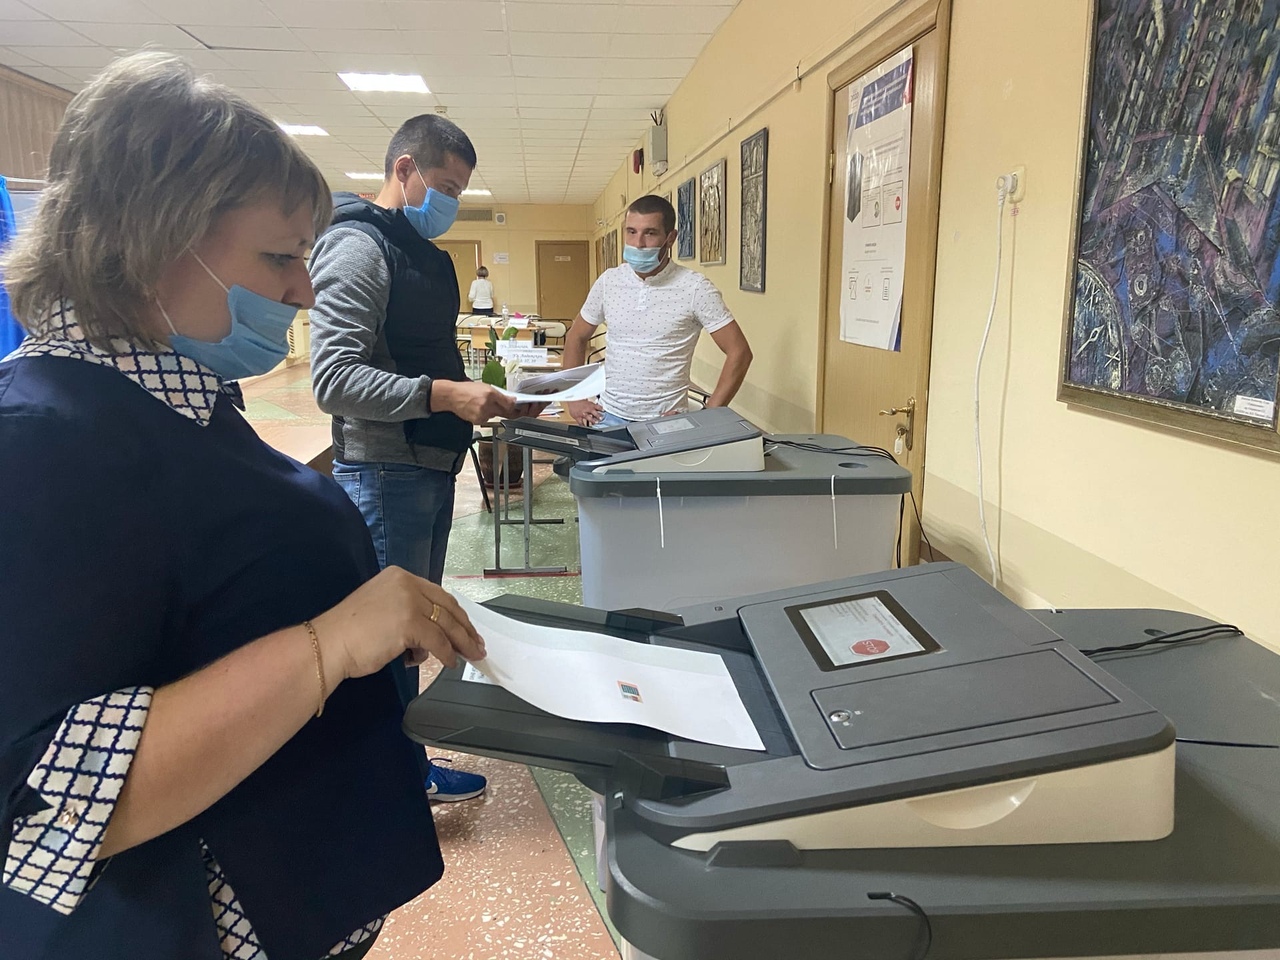 
		
		Подсчет голосов на одном из участков в Пензе. Взгляд журналиста
		
	